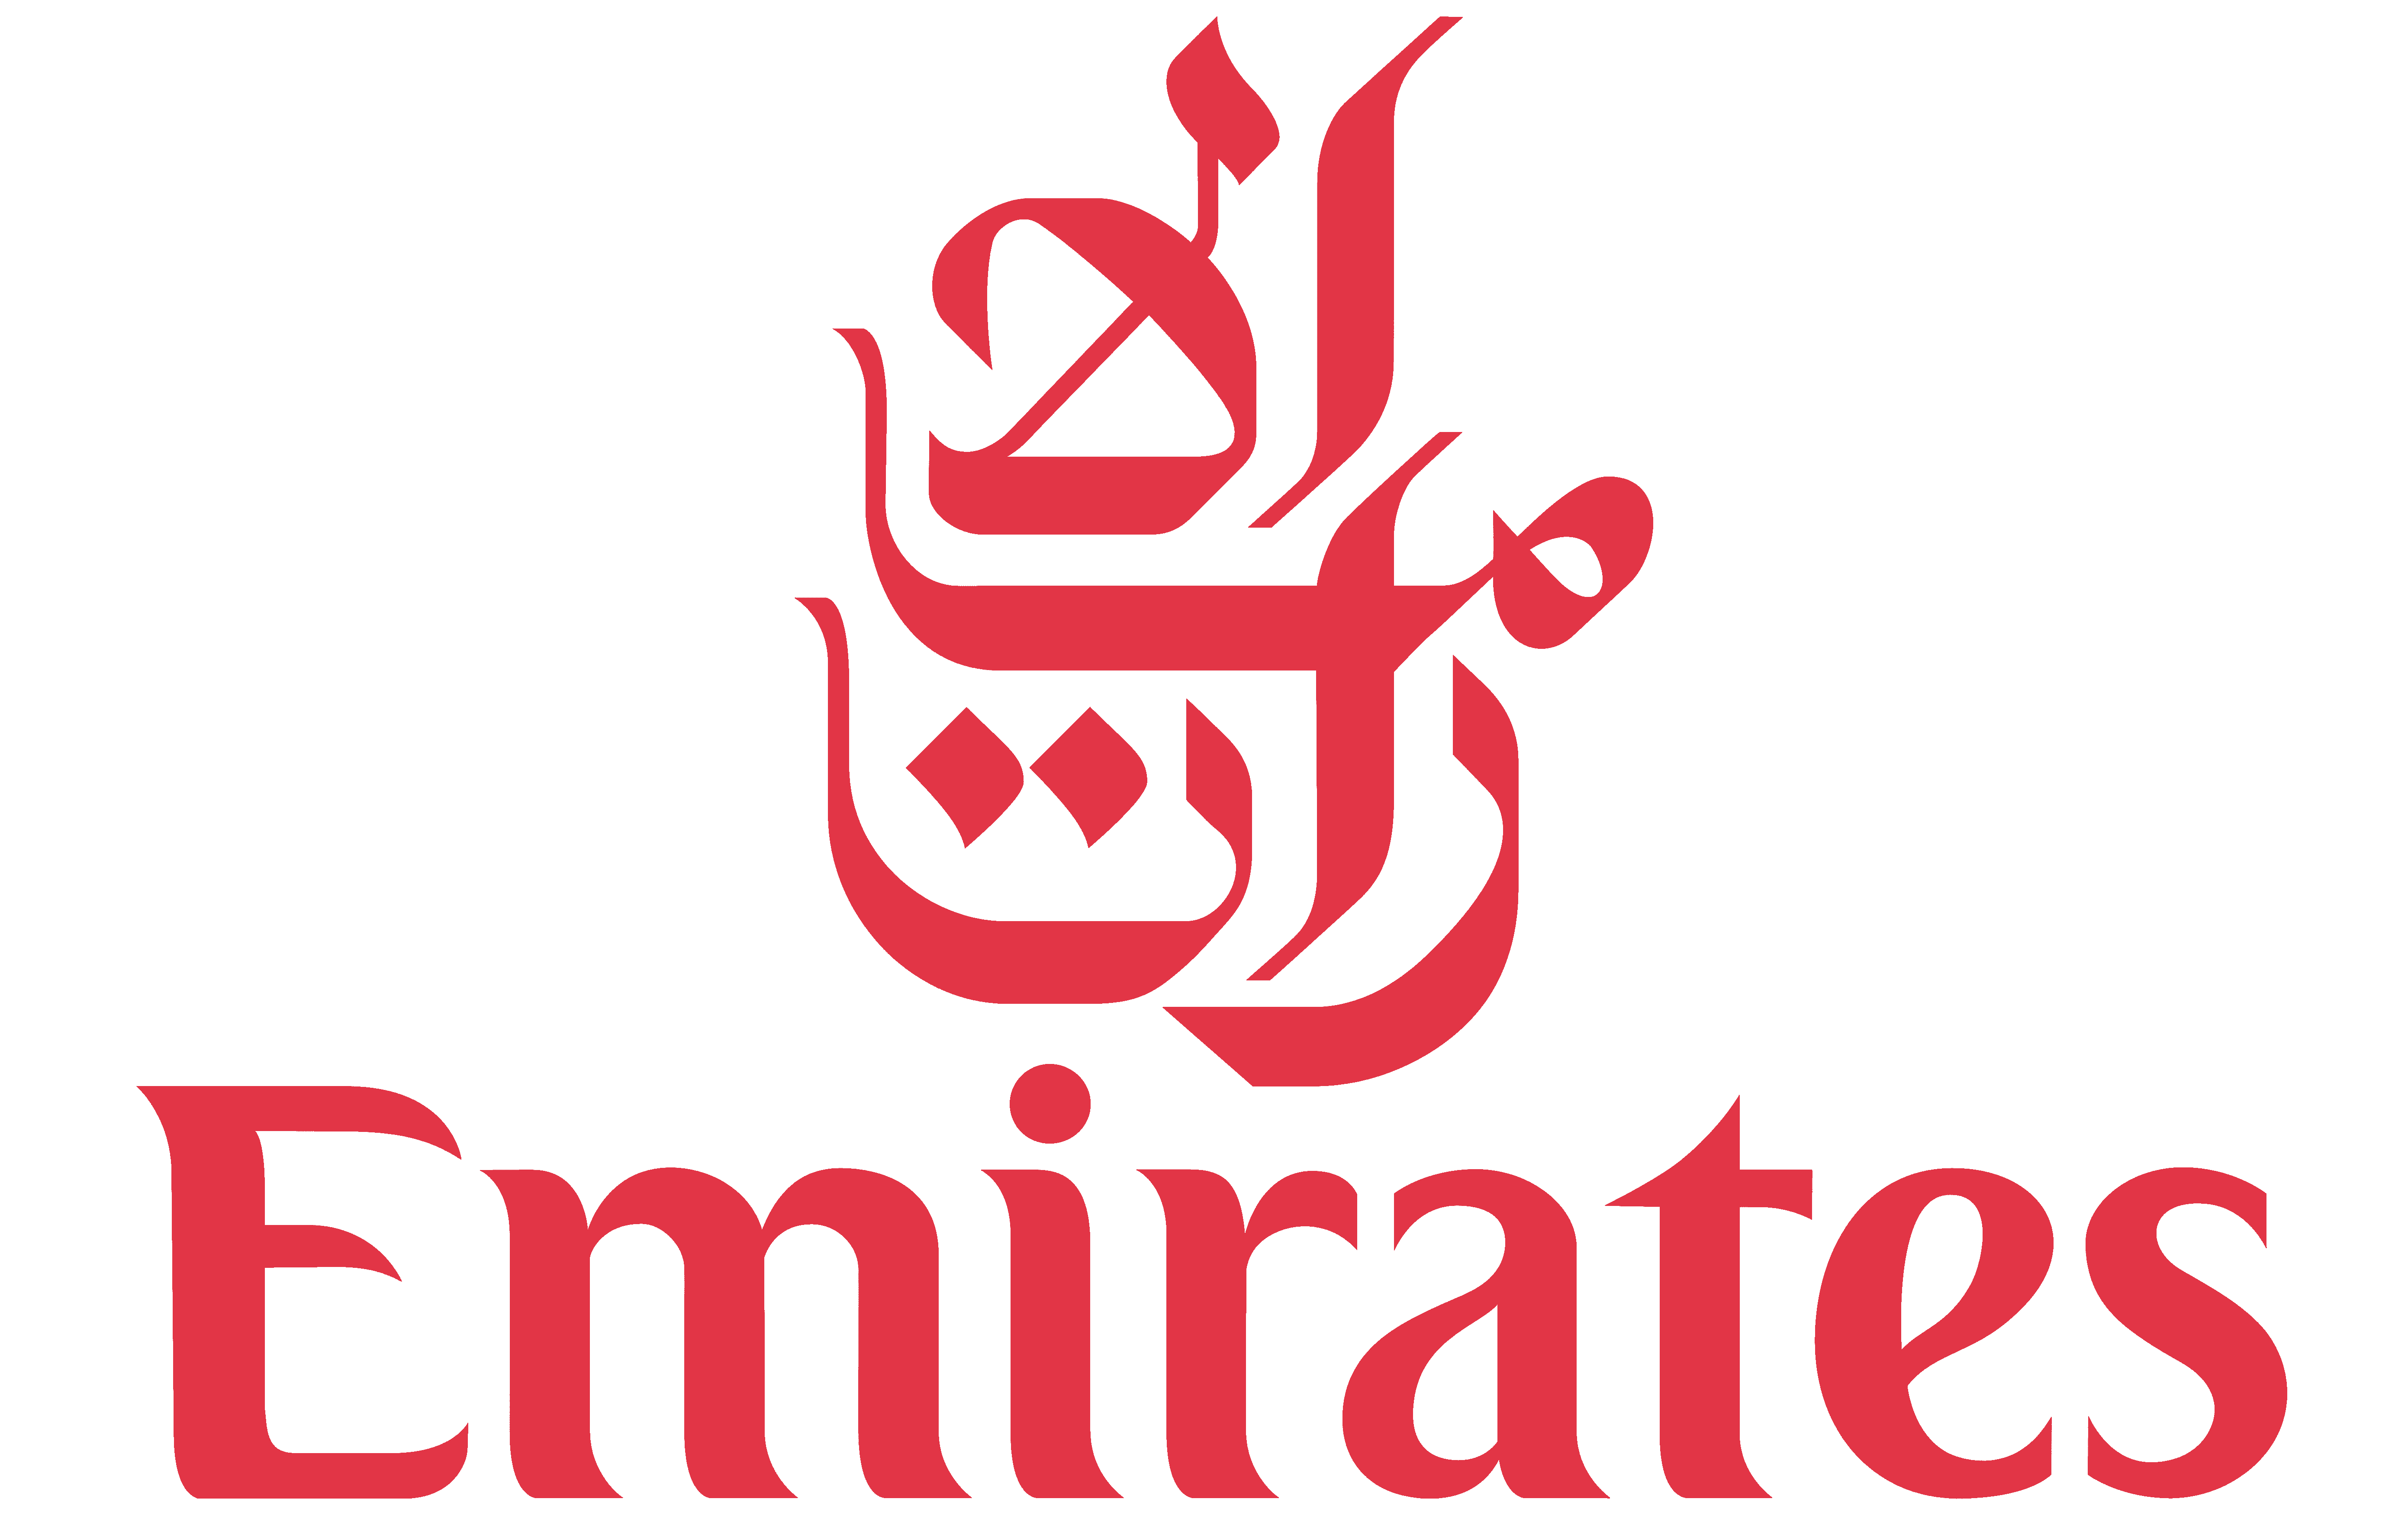 Emirates Transparent Logo PNG